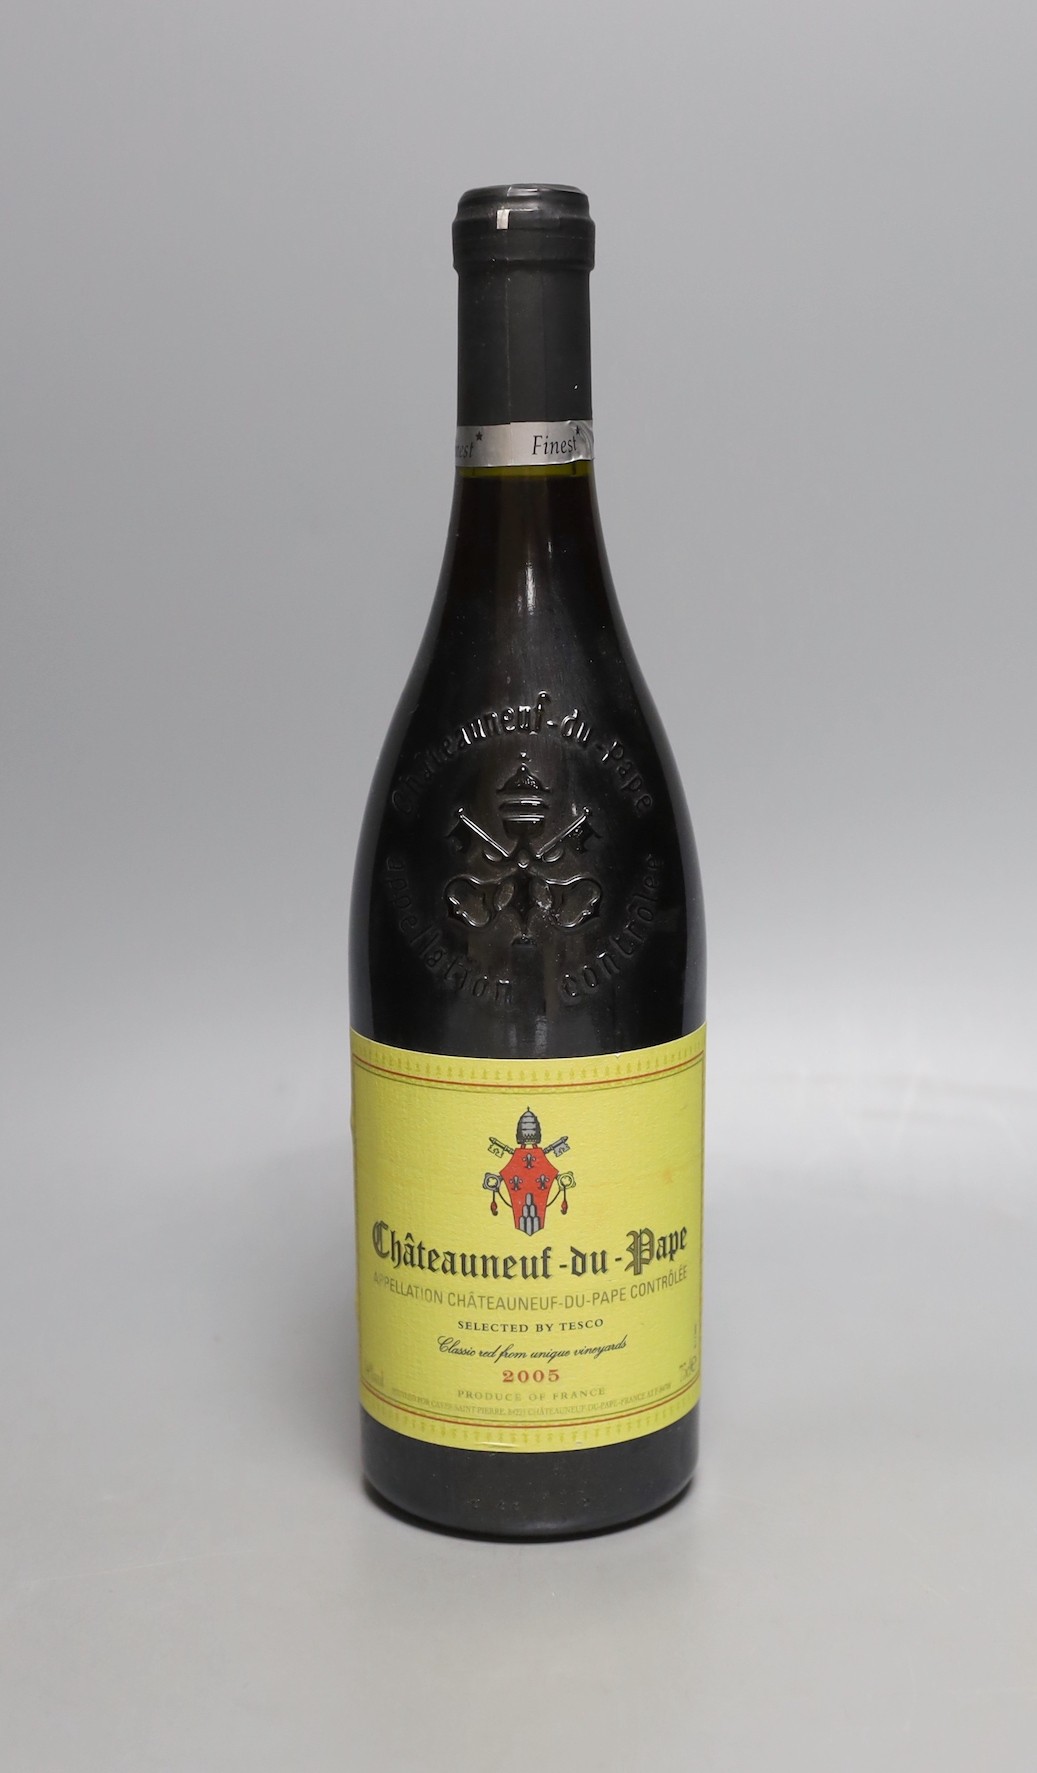 '12 bottles of Chateauneuf-du-Pape